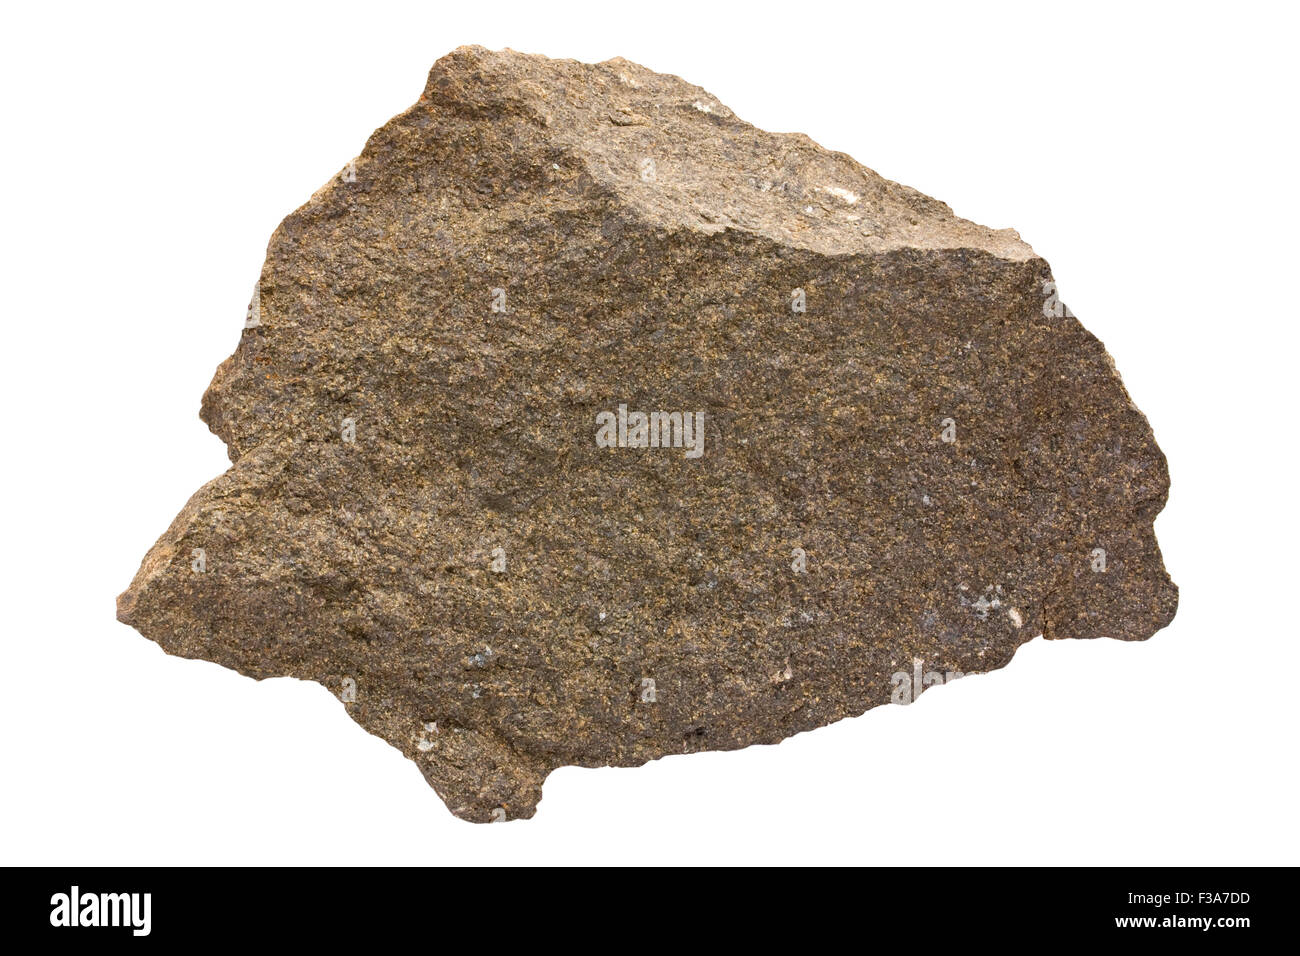 Harzburgite (orthopyroxene peridotite) Stock Photo